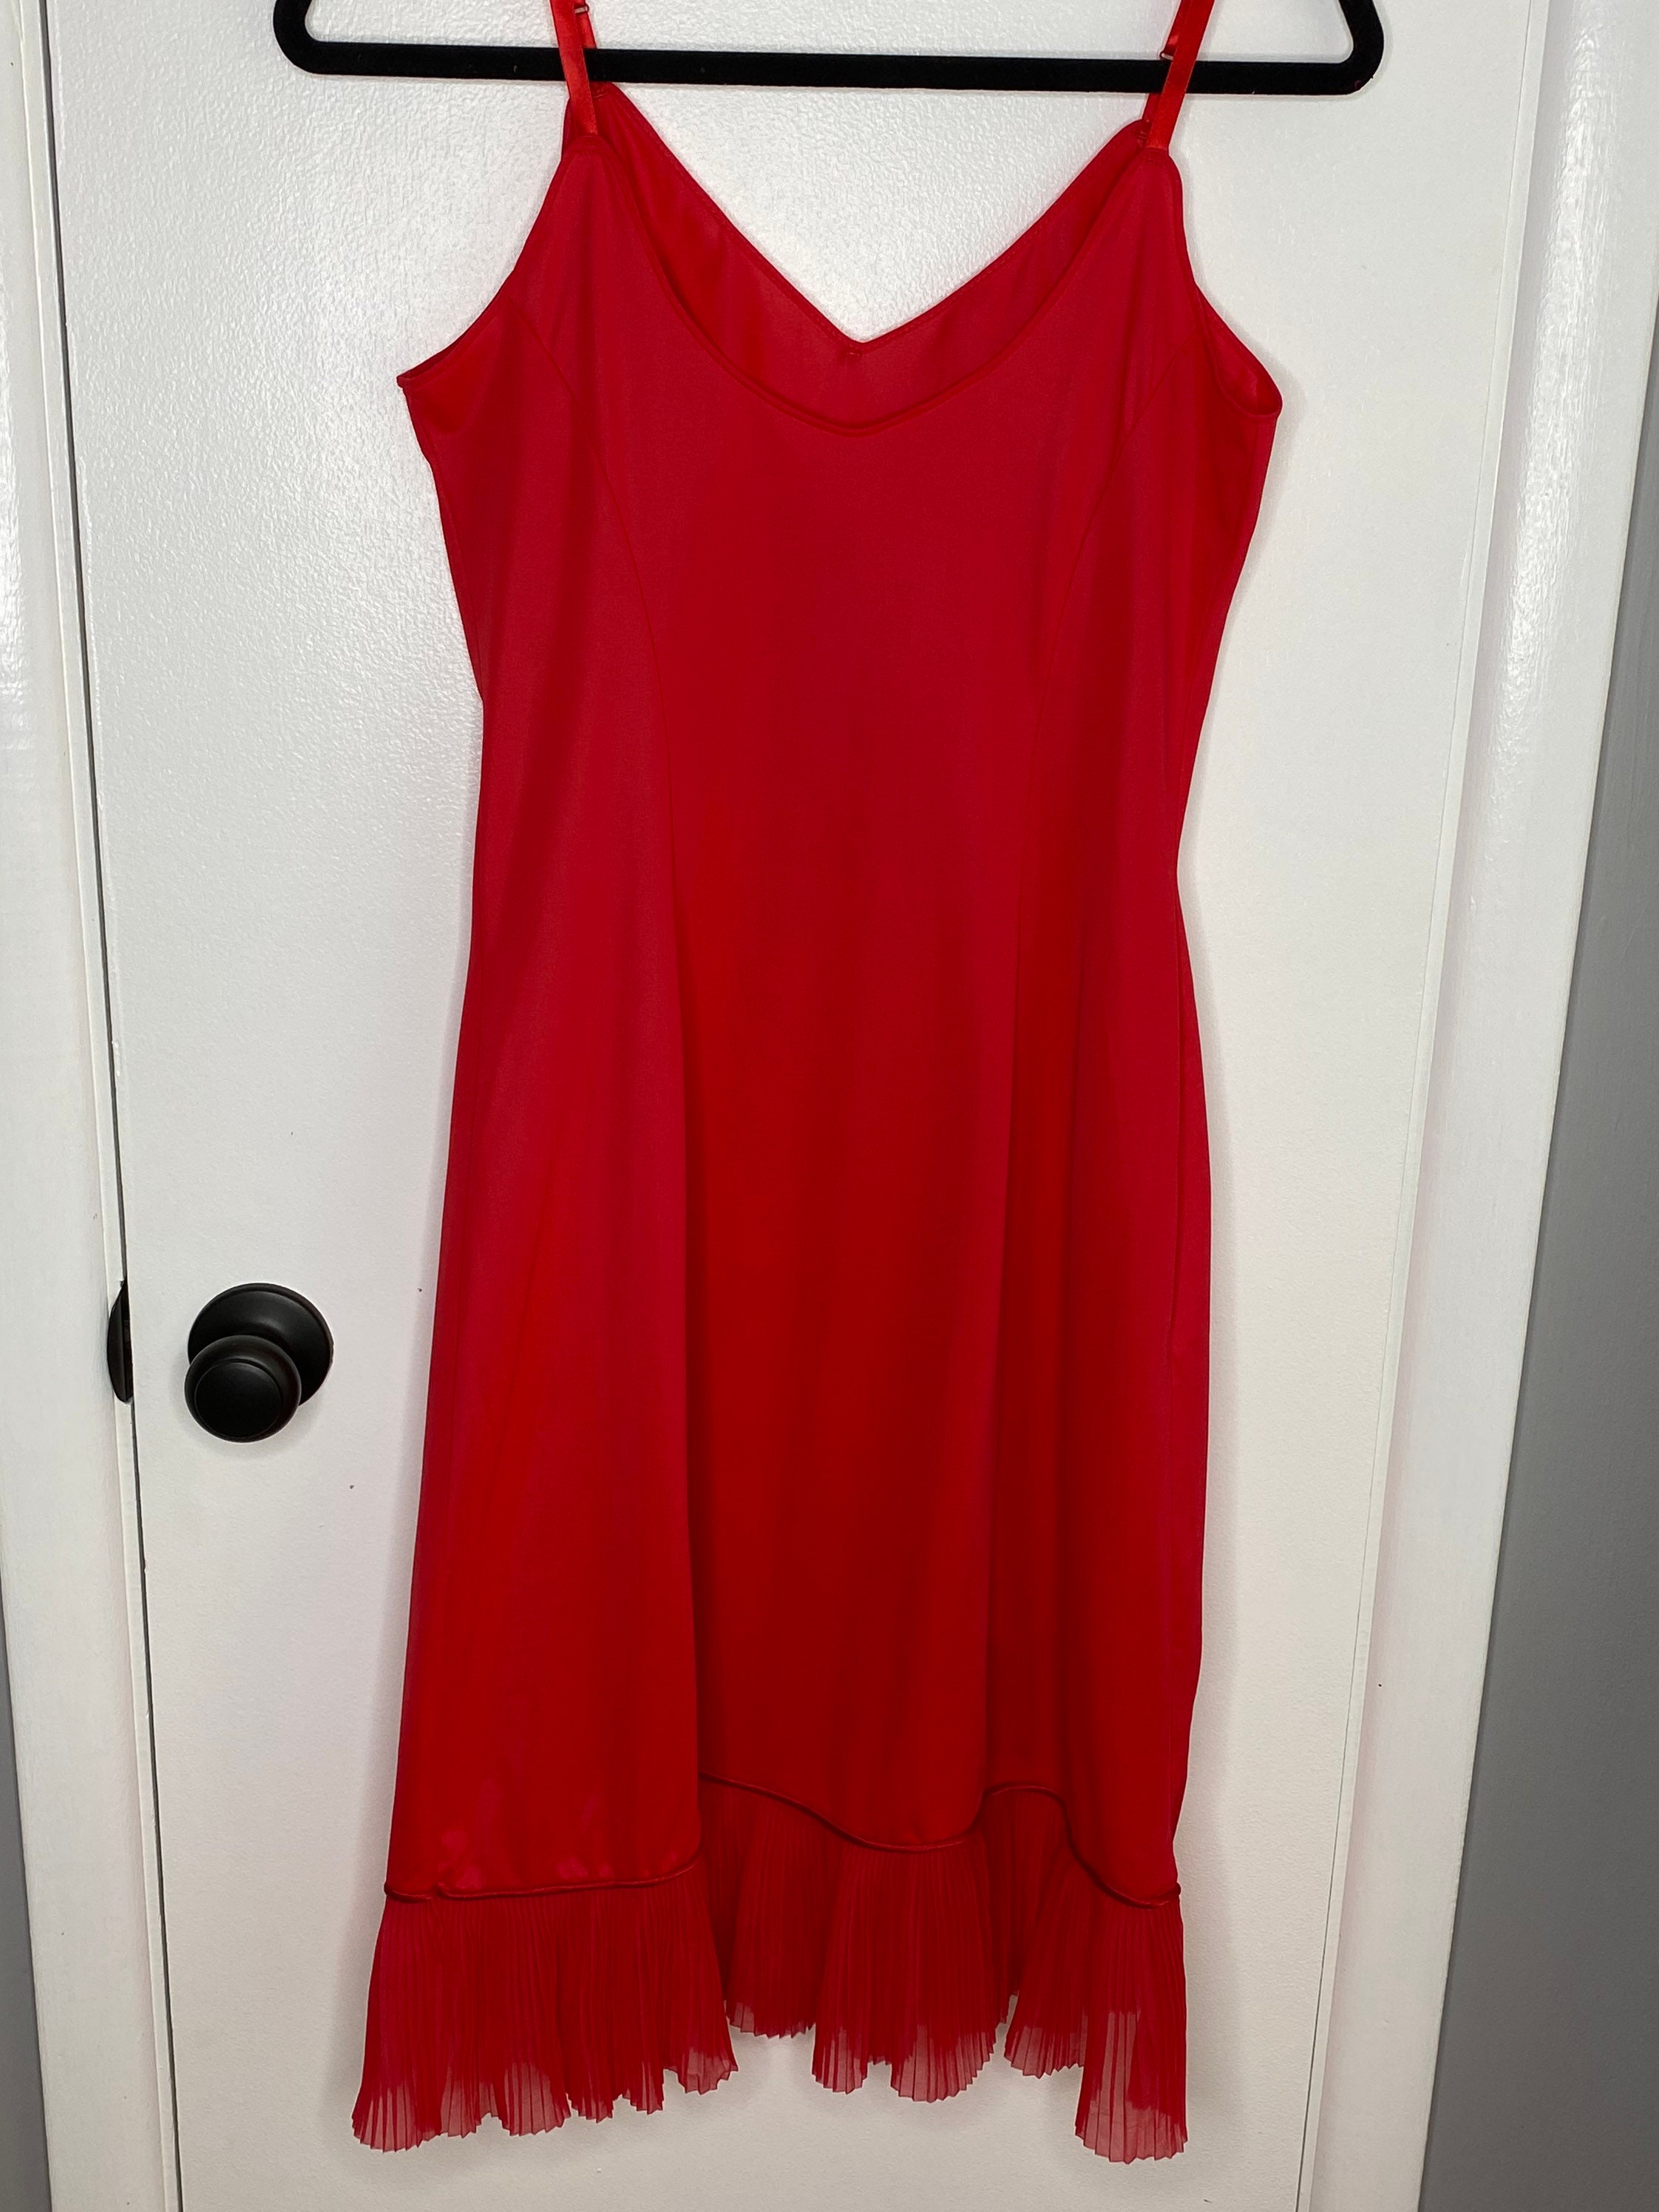 Vintage 1960s Red Nylon Slip Dress Van Raalte Silky Nylon | Etsy